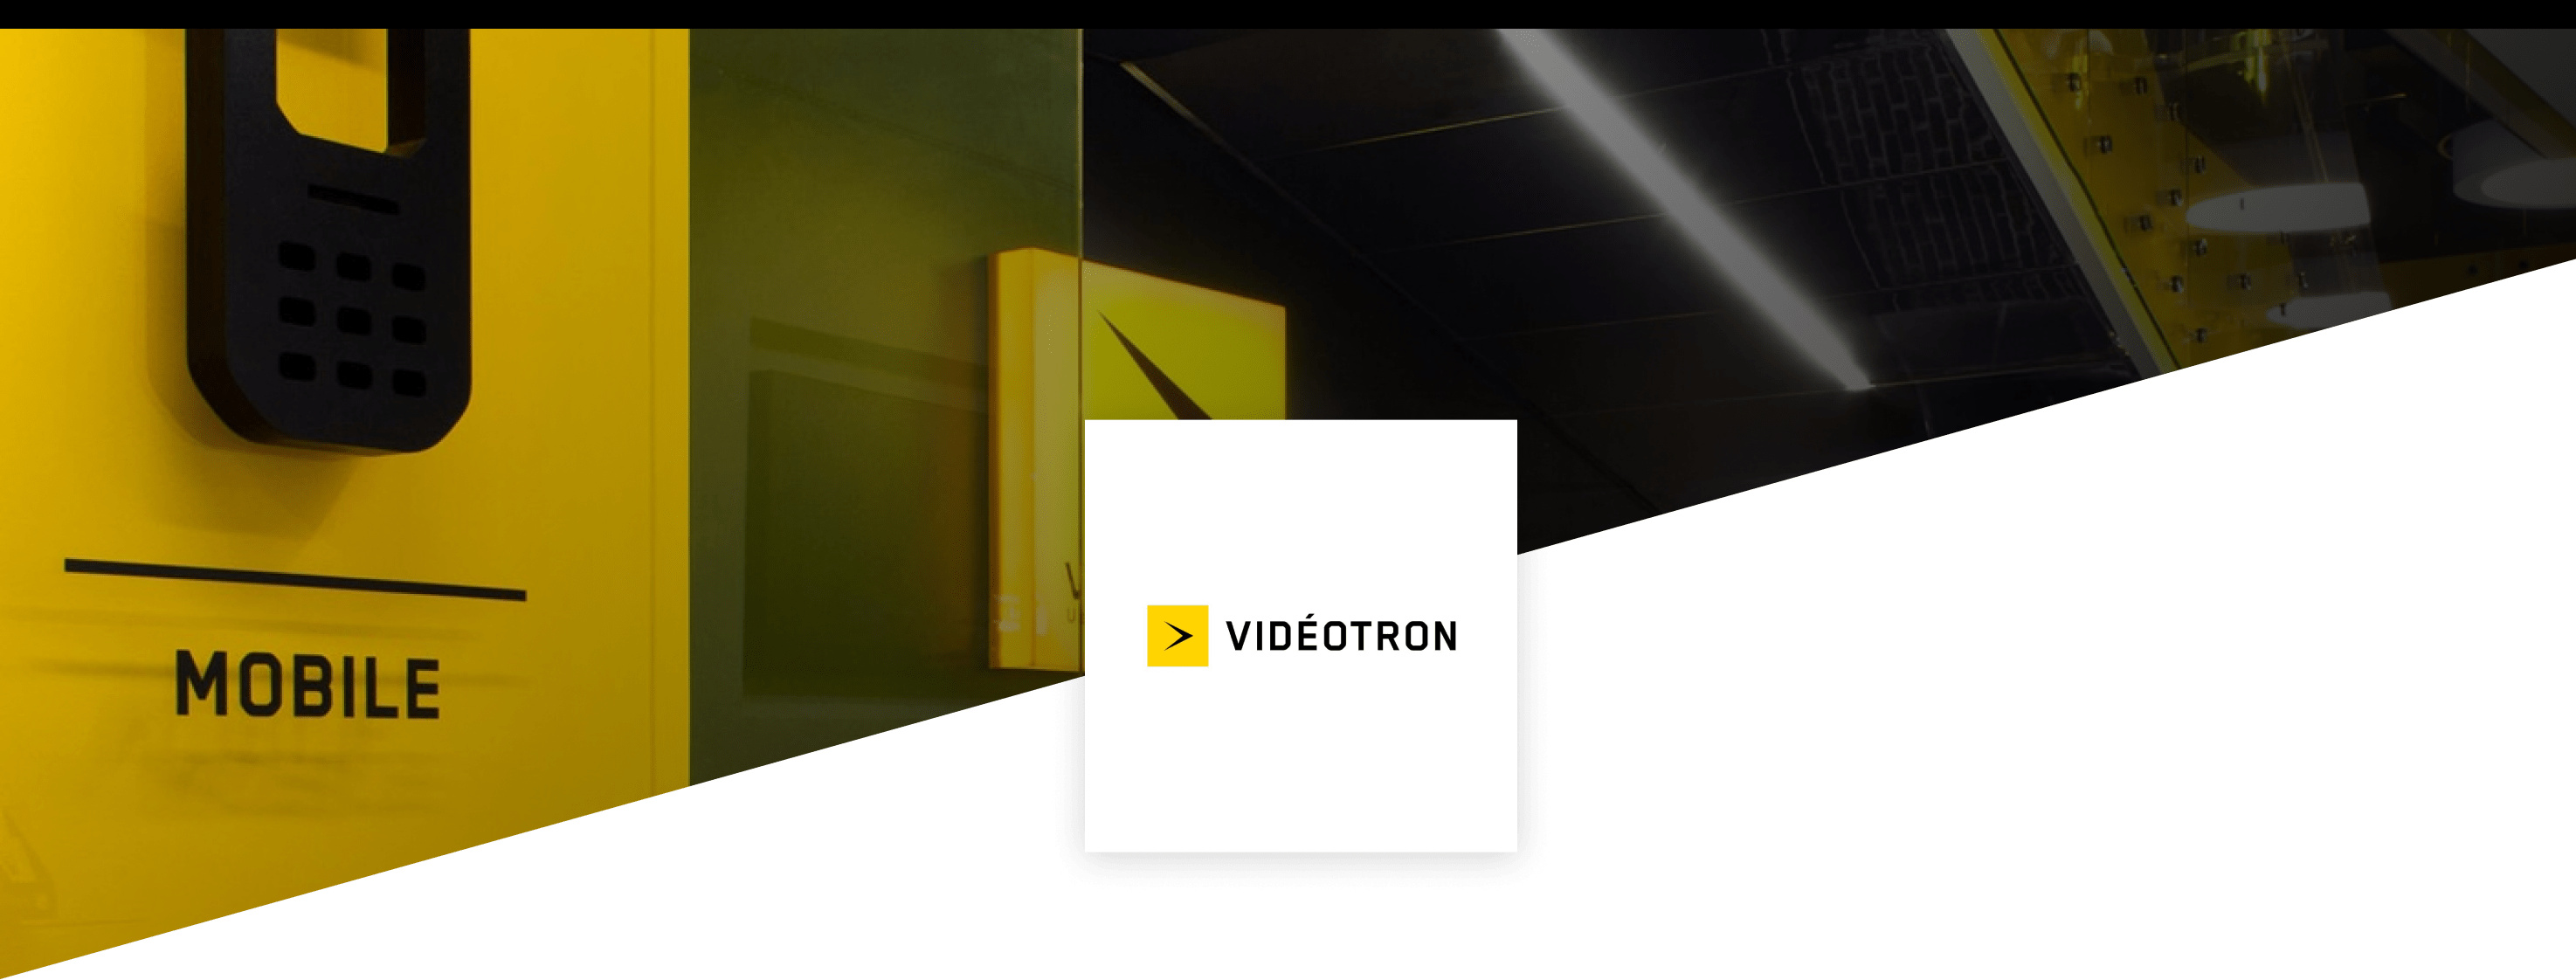 Logo Videotron Ineat